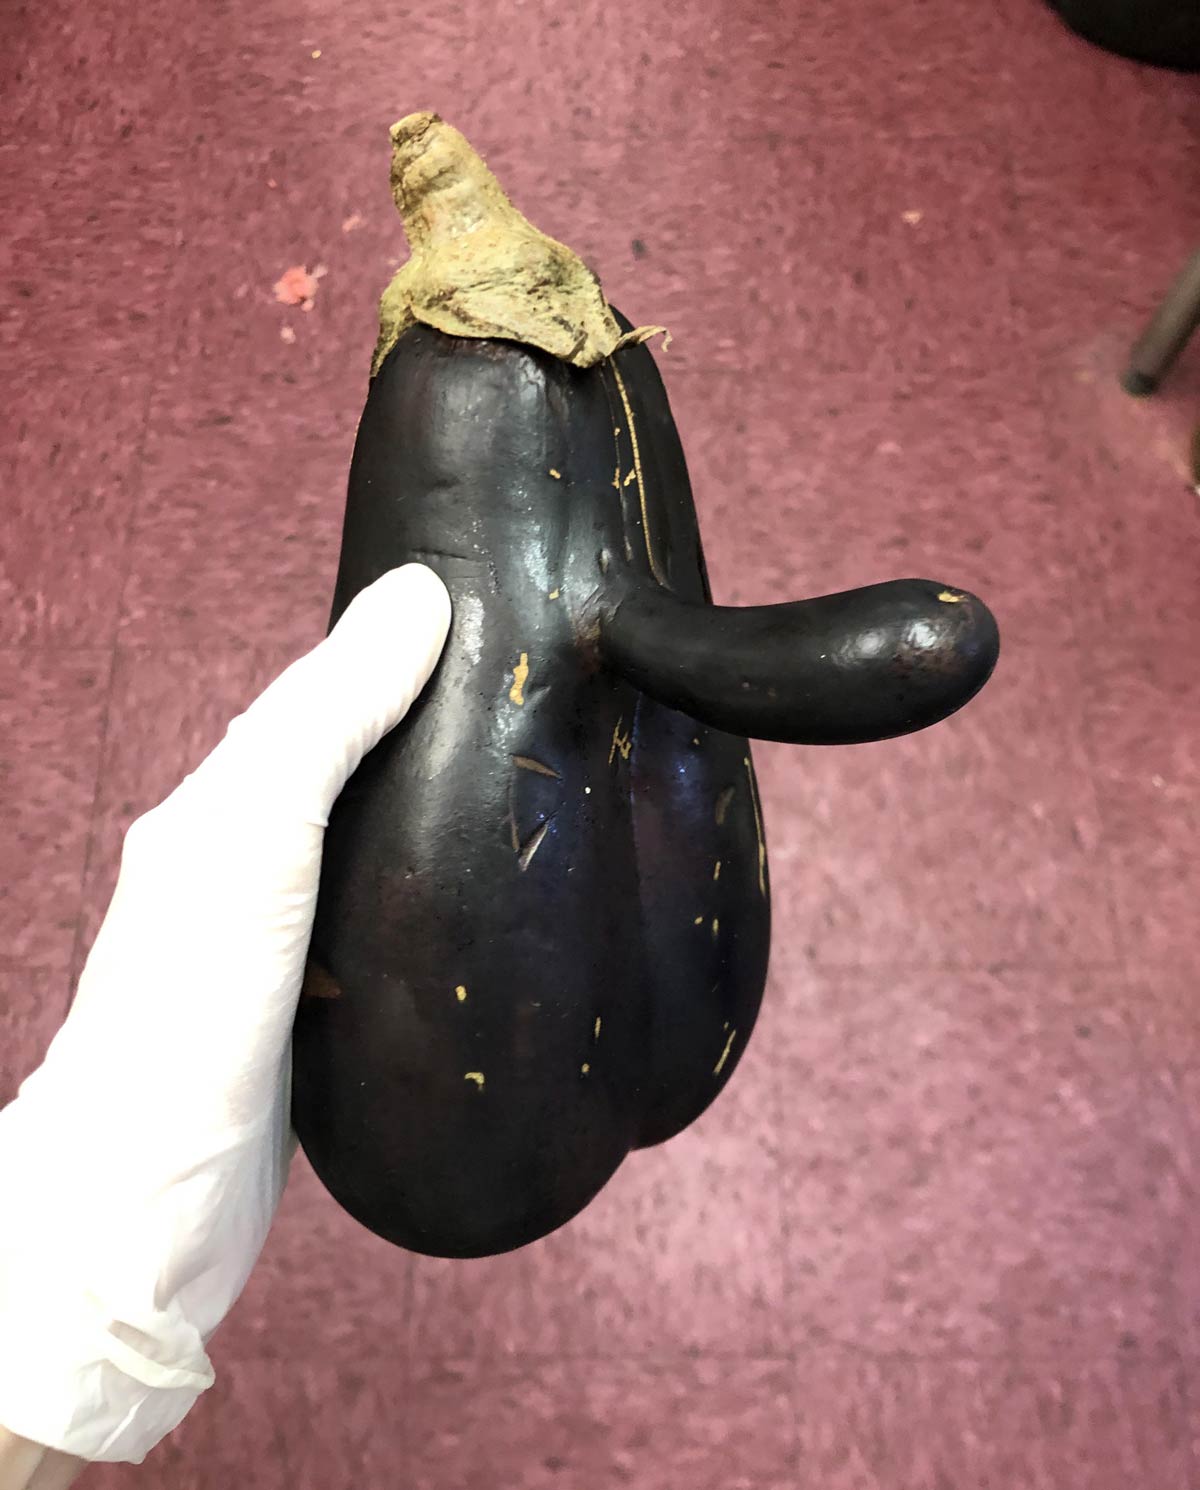 This eggplant I found a few years ago